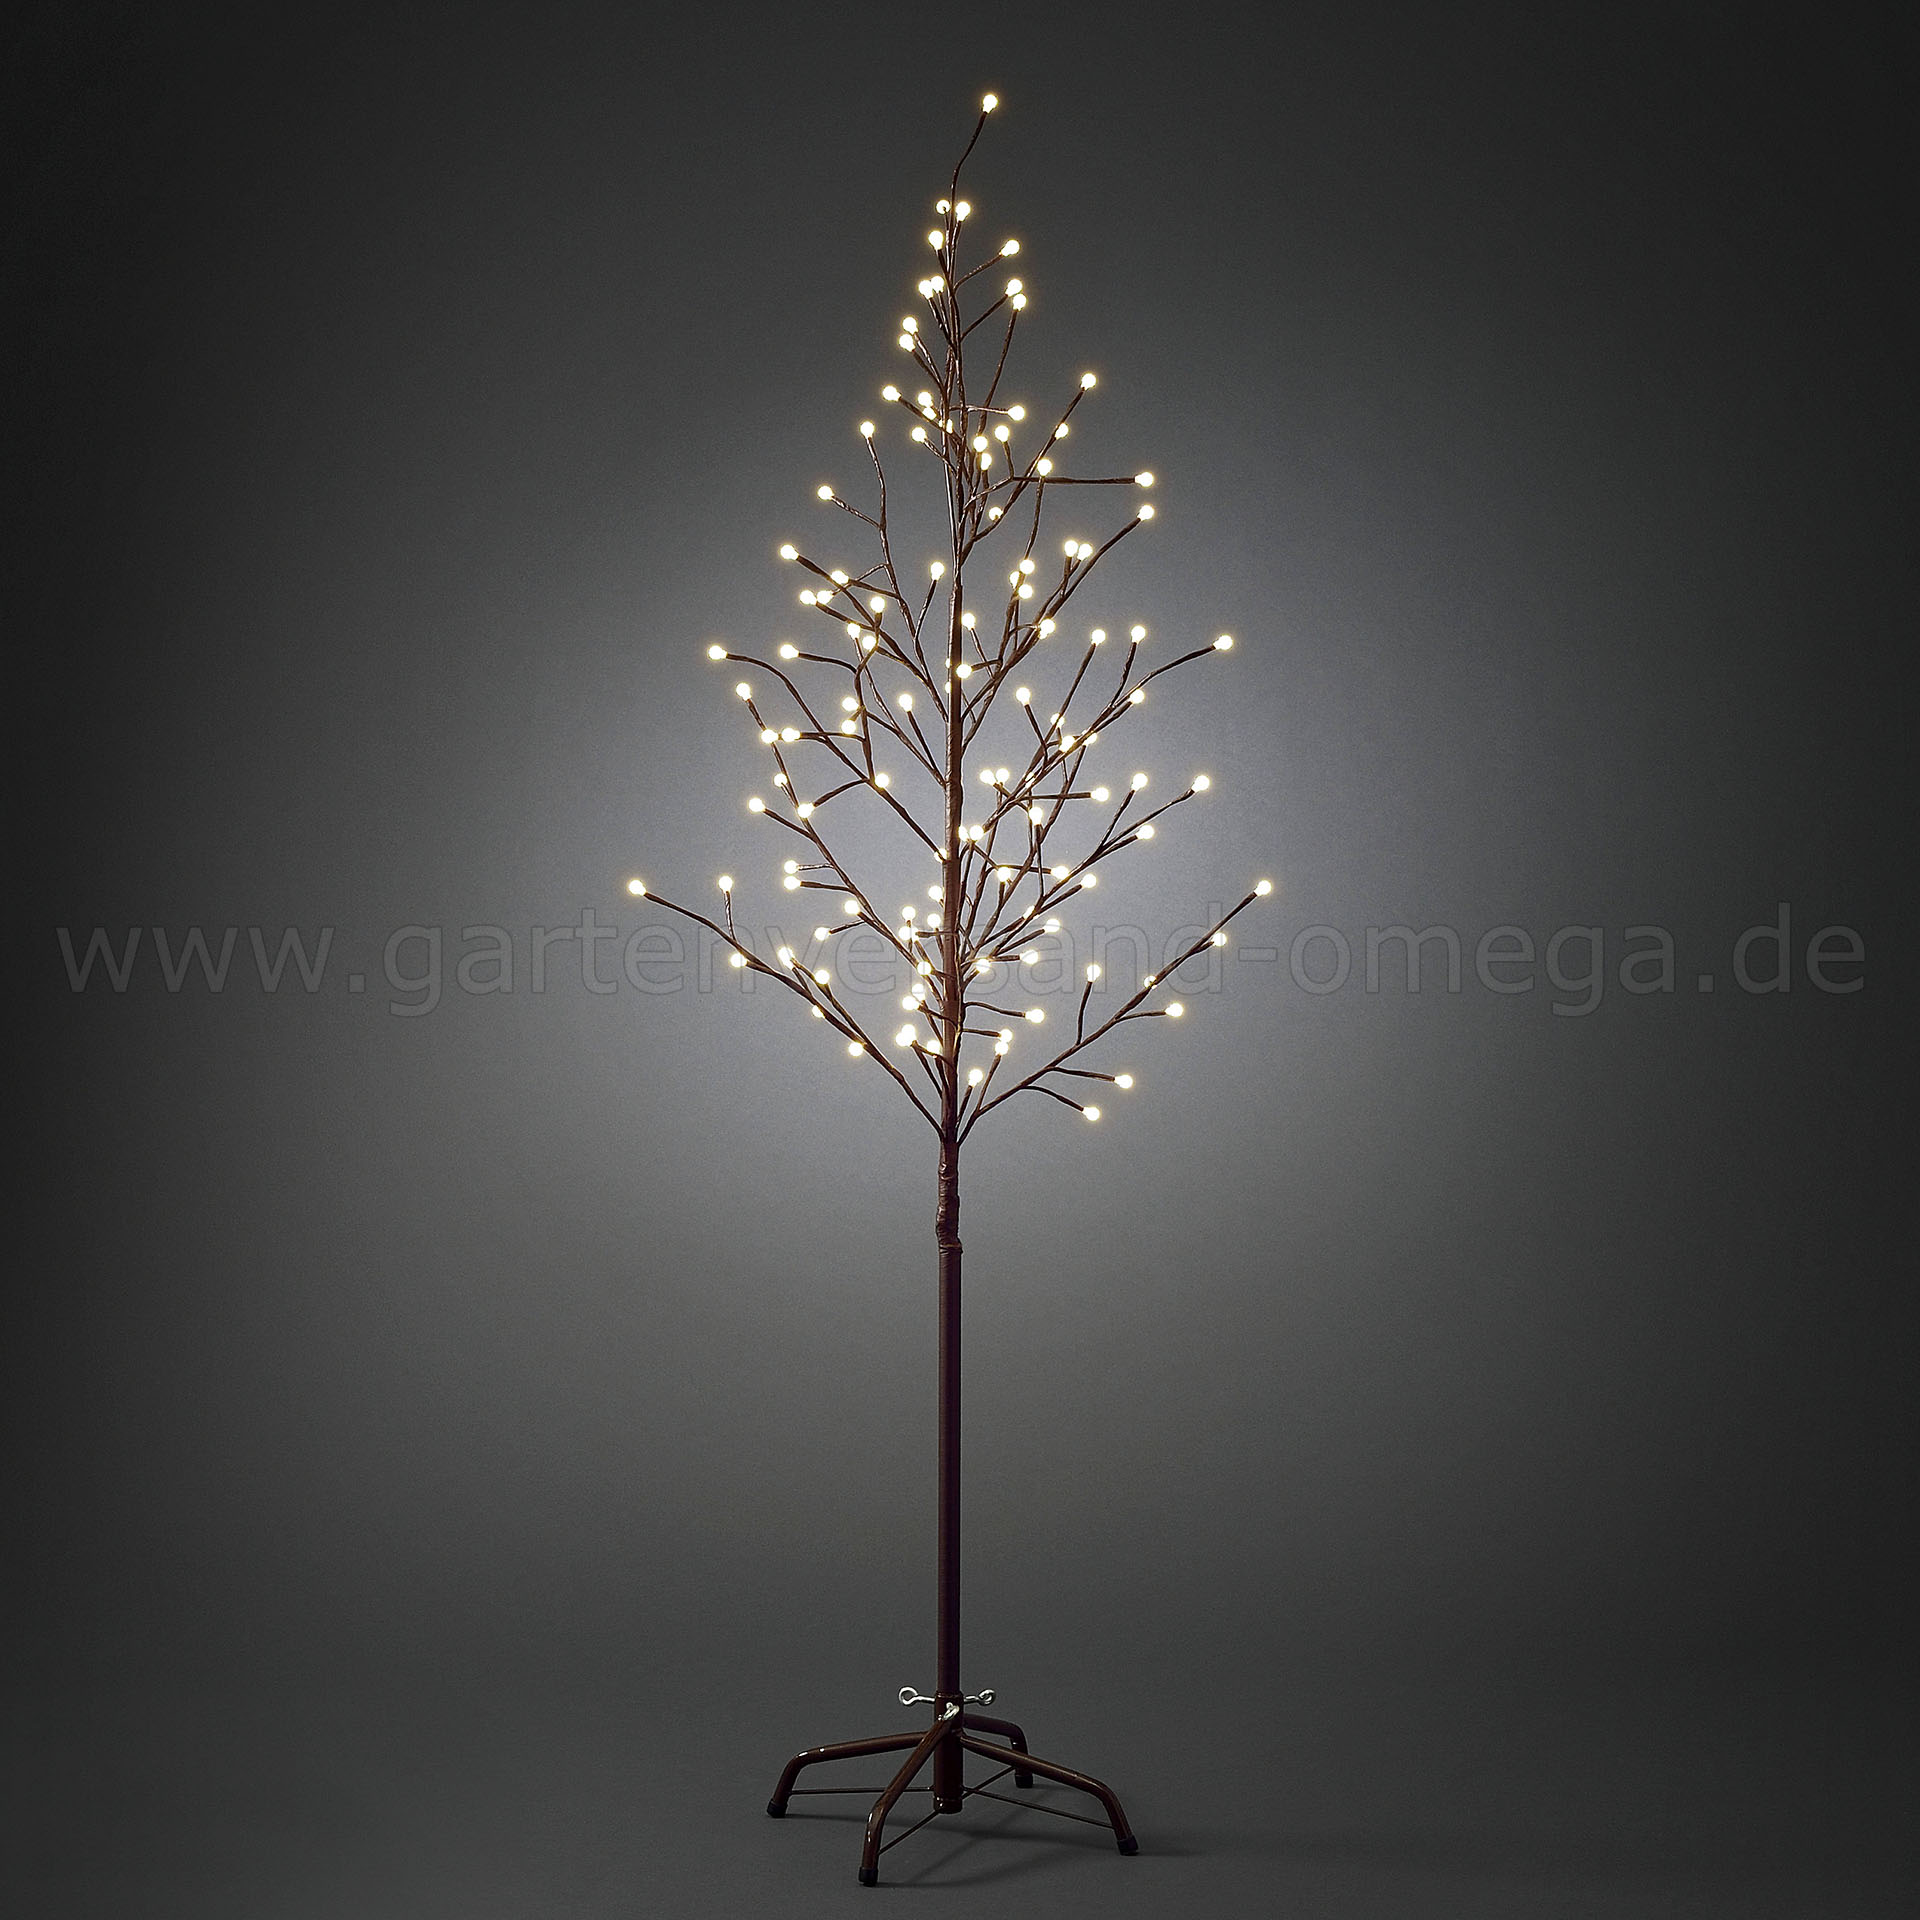 https://www.weihnachten-aktuell.de/media/image/98/6b/88/LED-Lichterbaum-150cm_LED-Baum-Aussen-3378-600.jpg